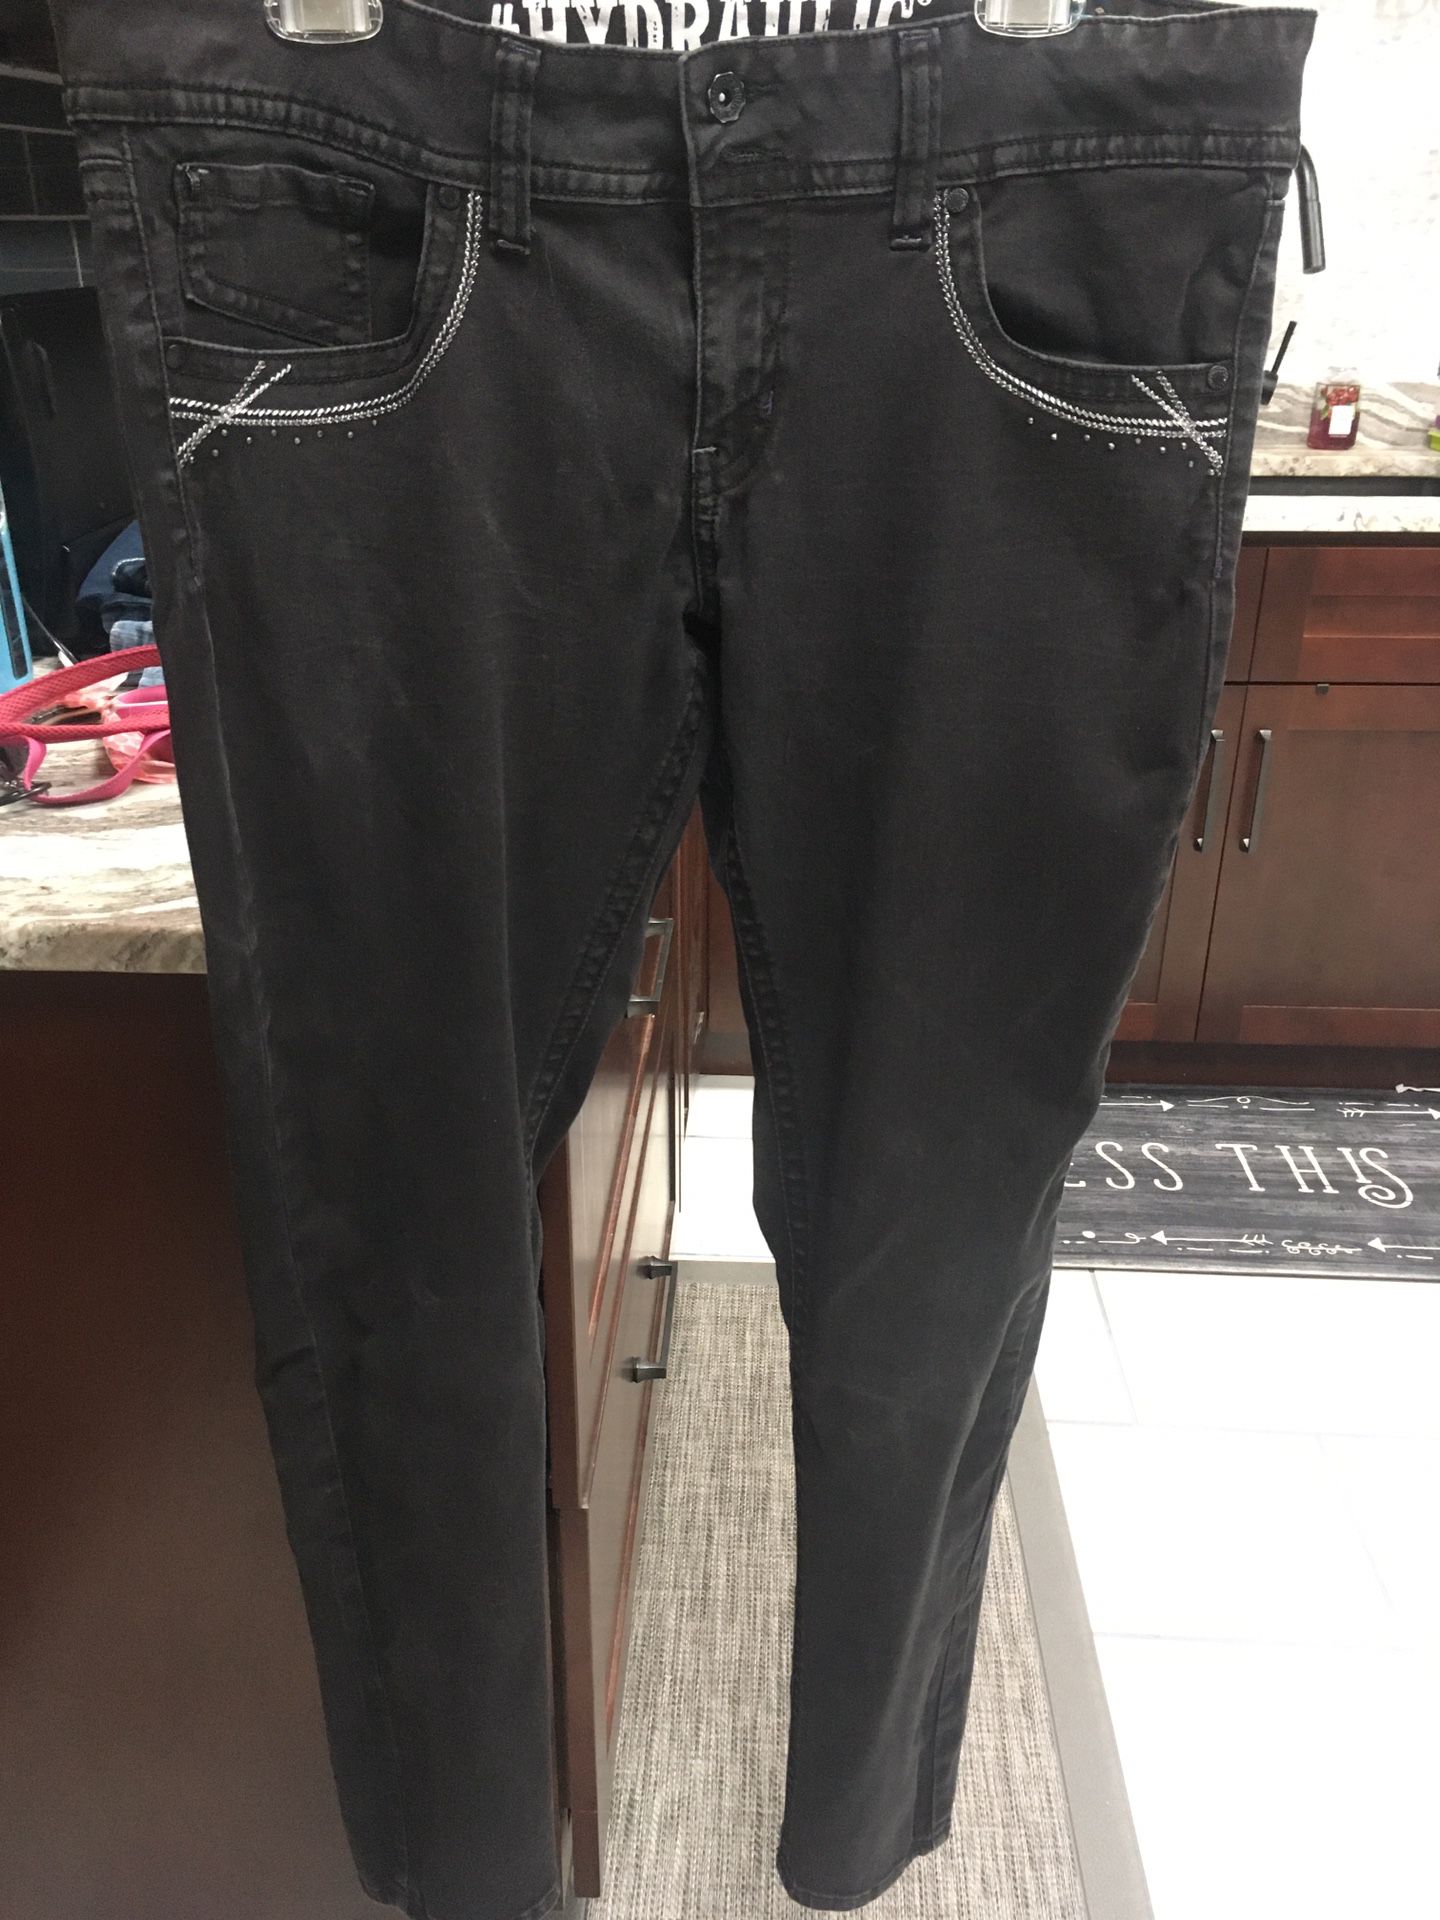 Size 17/18 hydraulic skinny leg jeans